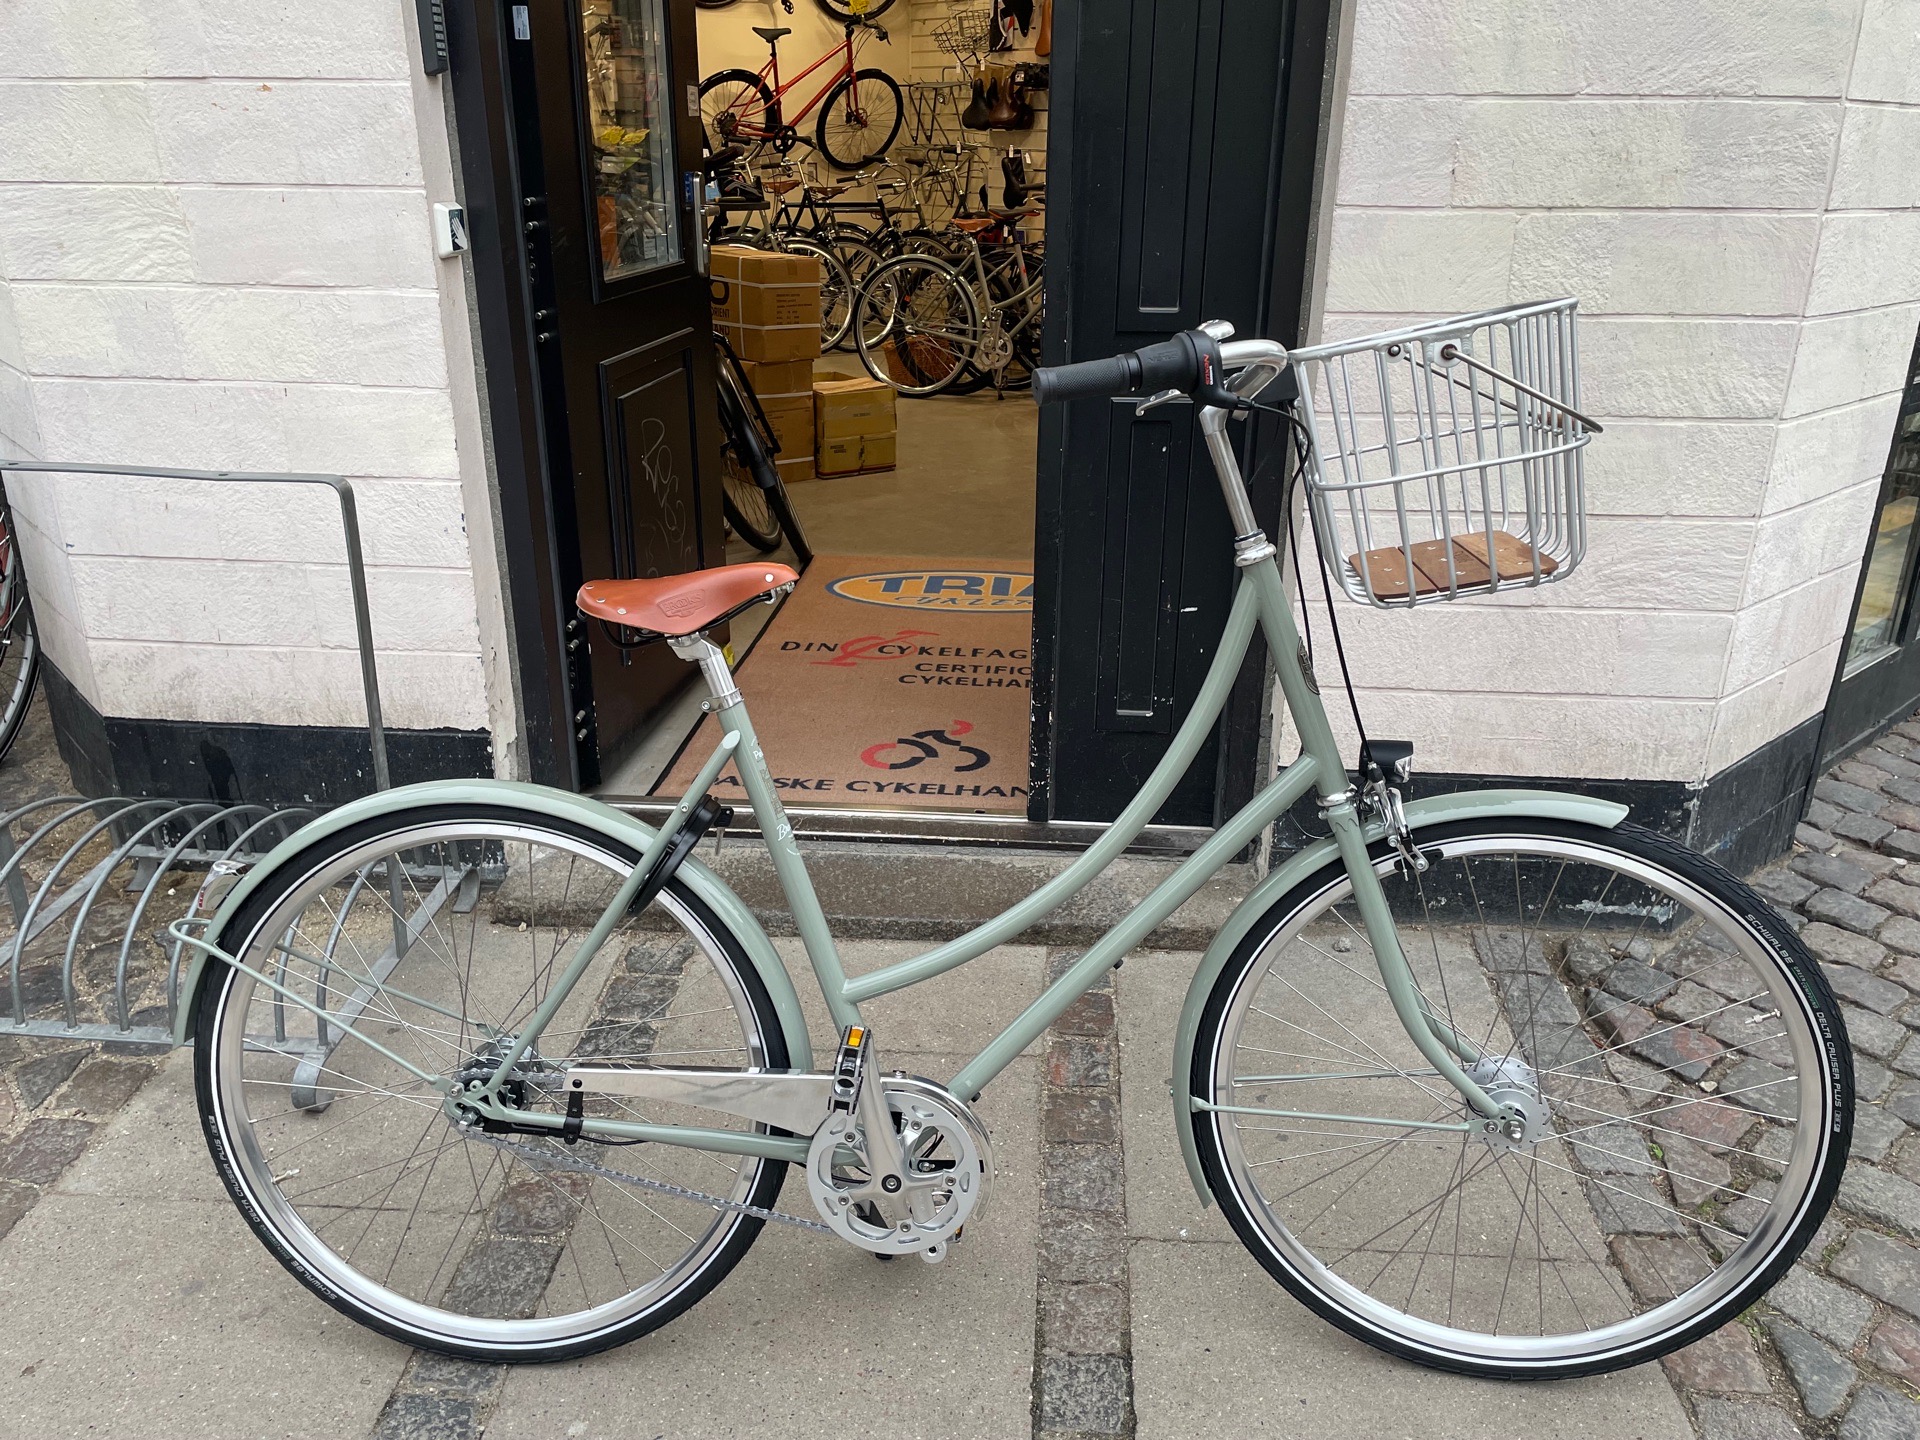 leje atom skæg Pelago cykler til skarpe priser på Østerbro i København